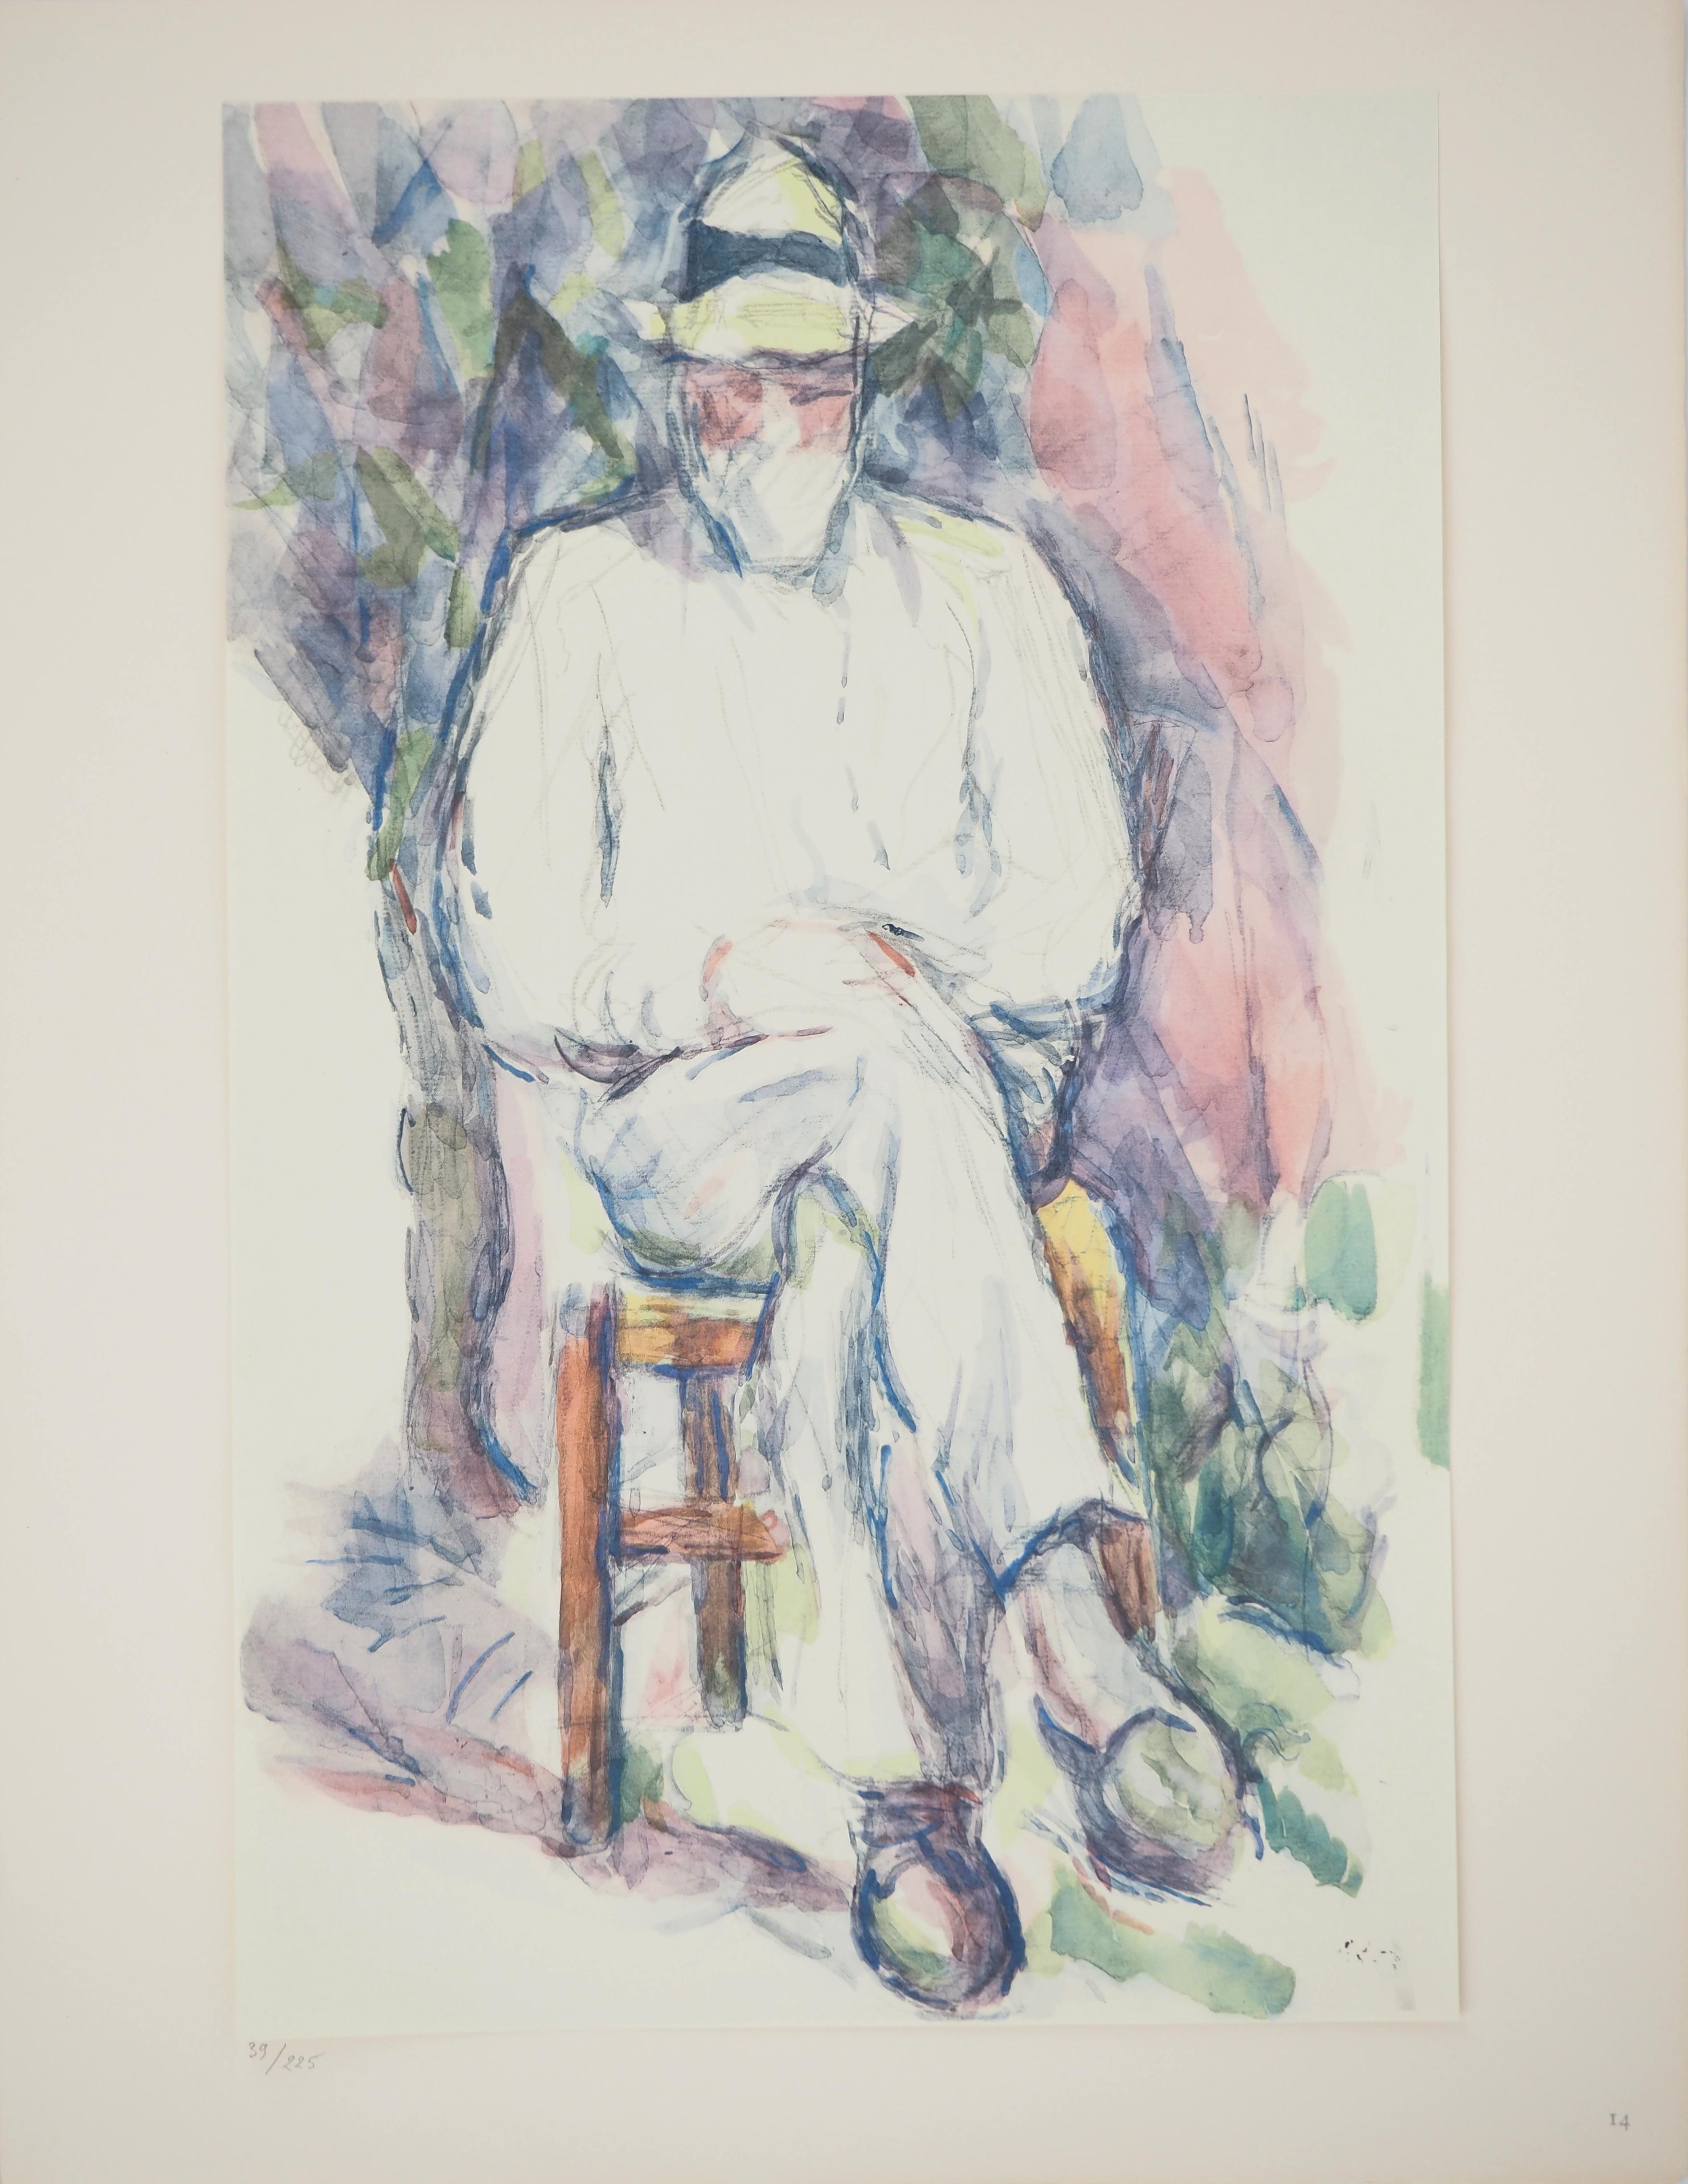 Paul Cézanne Portrait Print - Portrait, The man with a hat - Lithograph, 1971